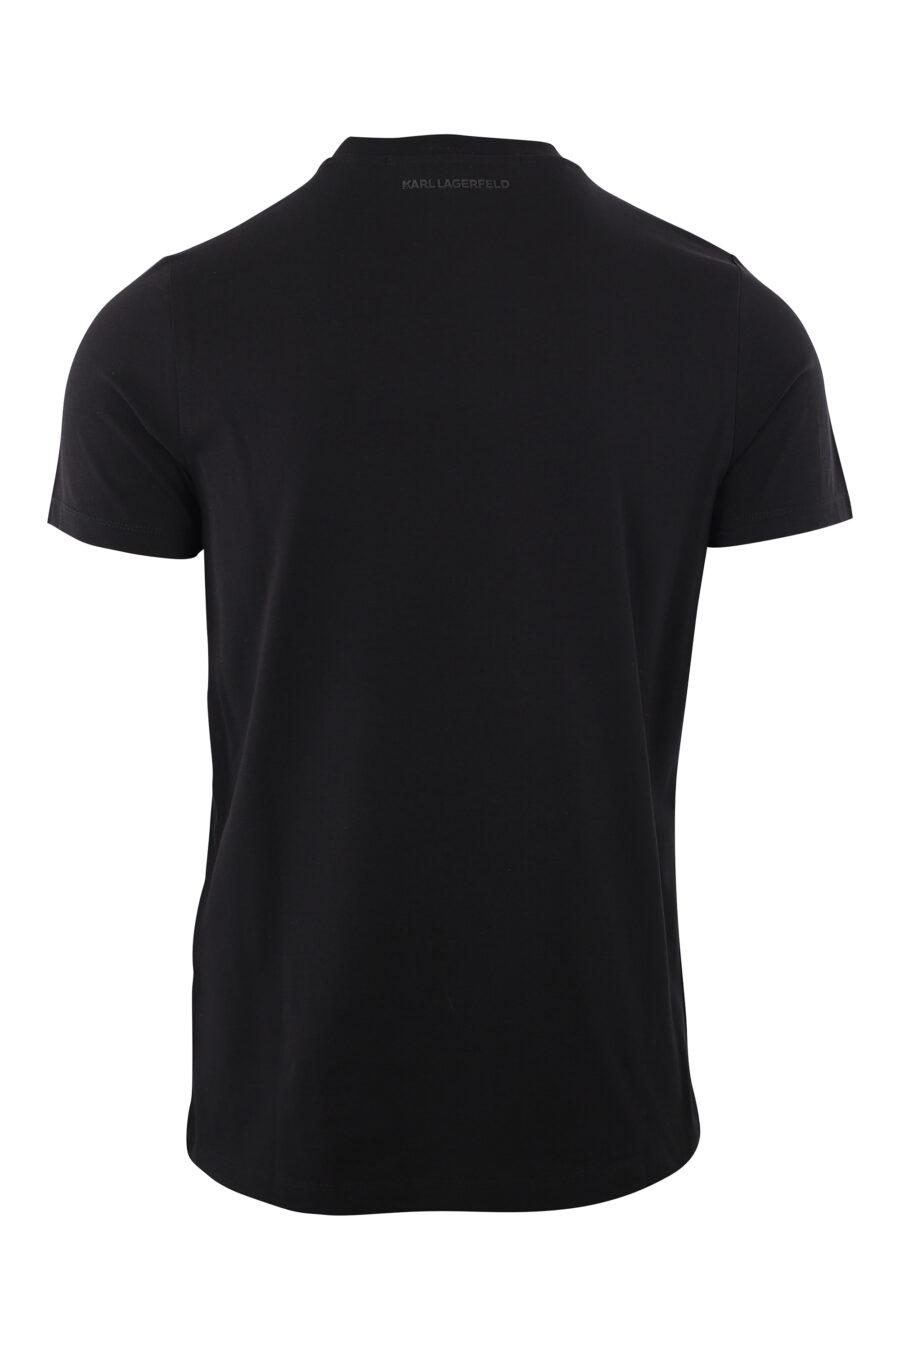 Camiseta negra con logo de goma "rue st-guillaume" dorado - IMG 2023